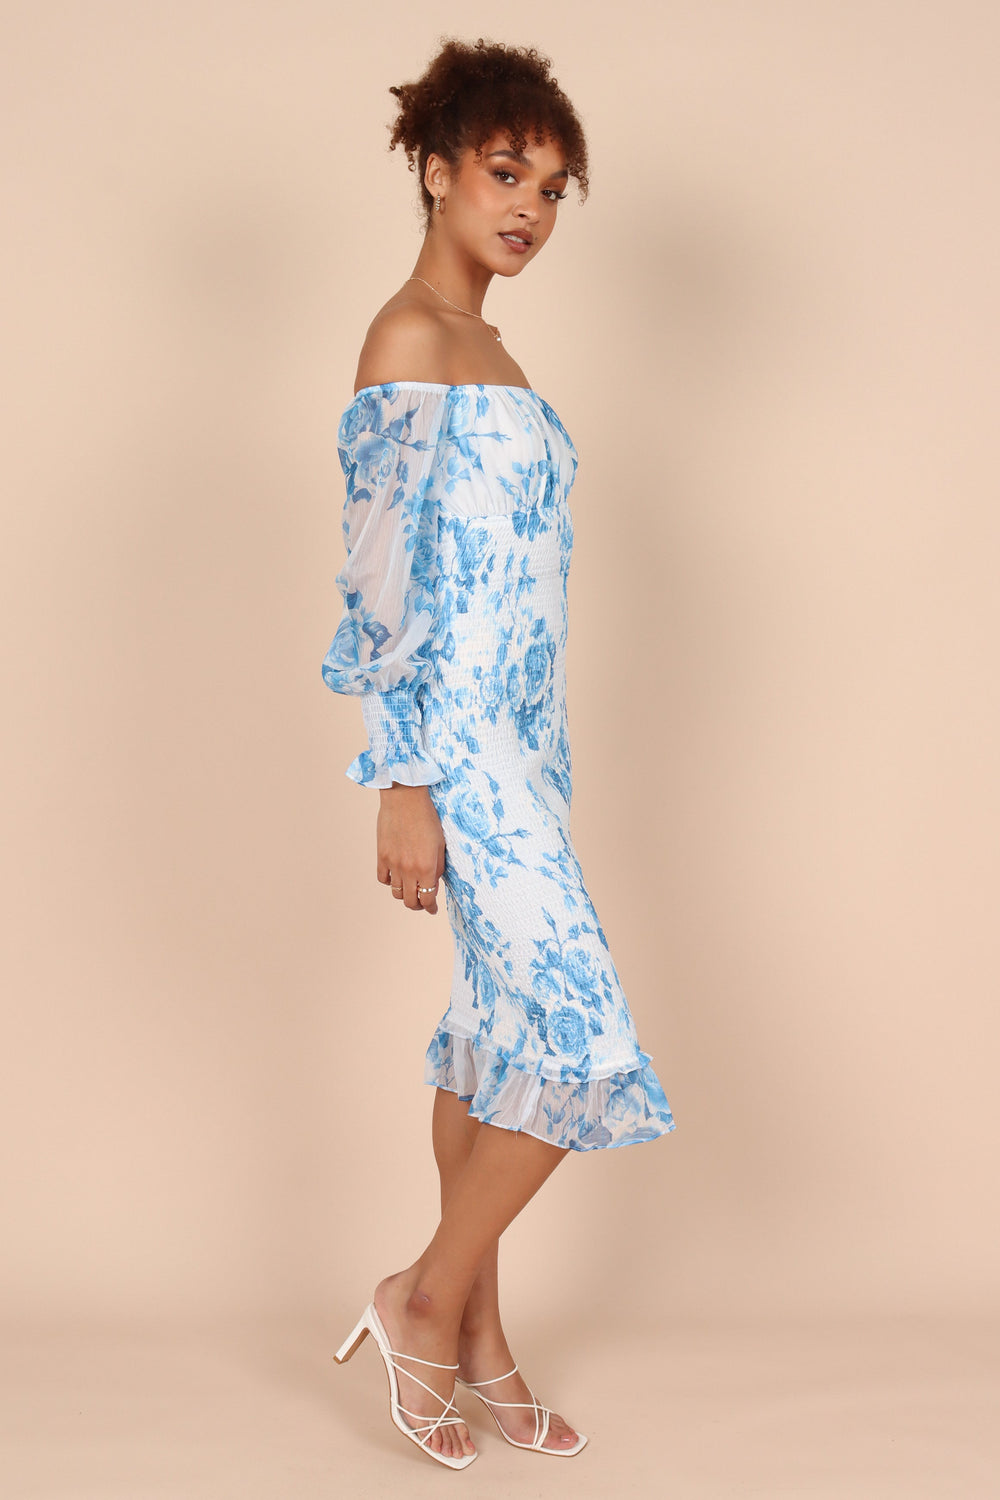 DRESSES @Affie Off Shoulder Midi Dress- Blue Floral